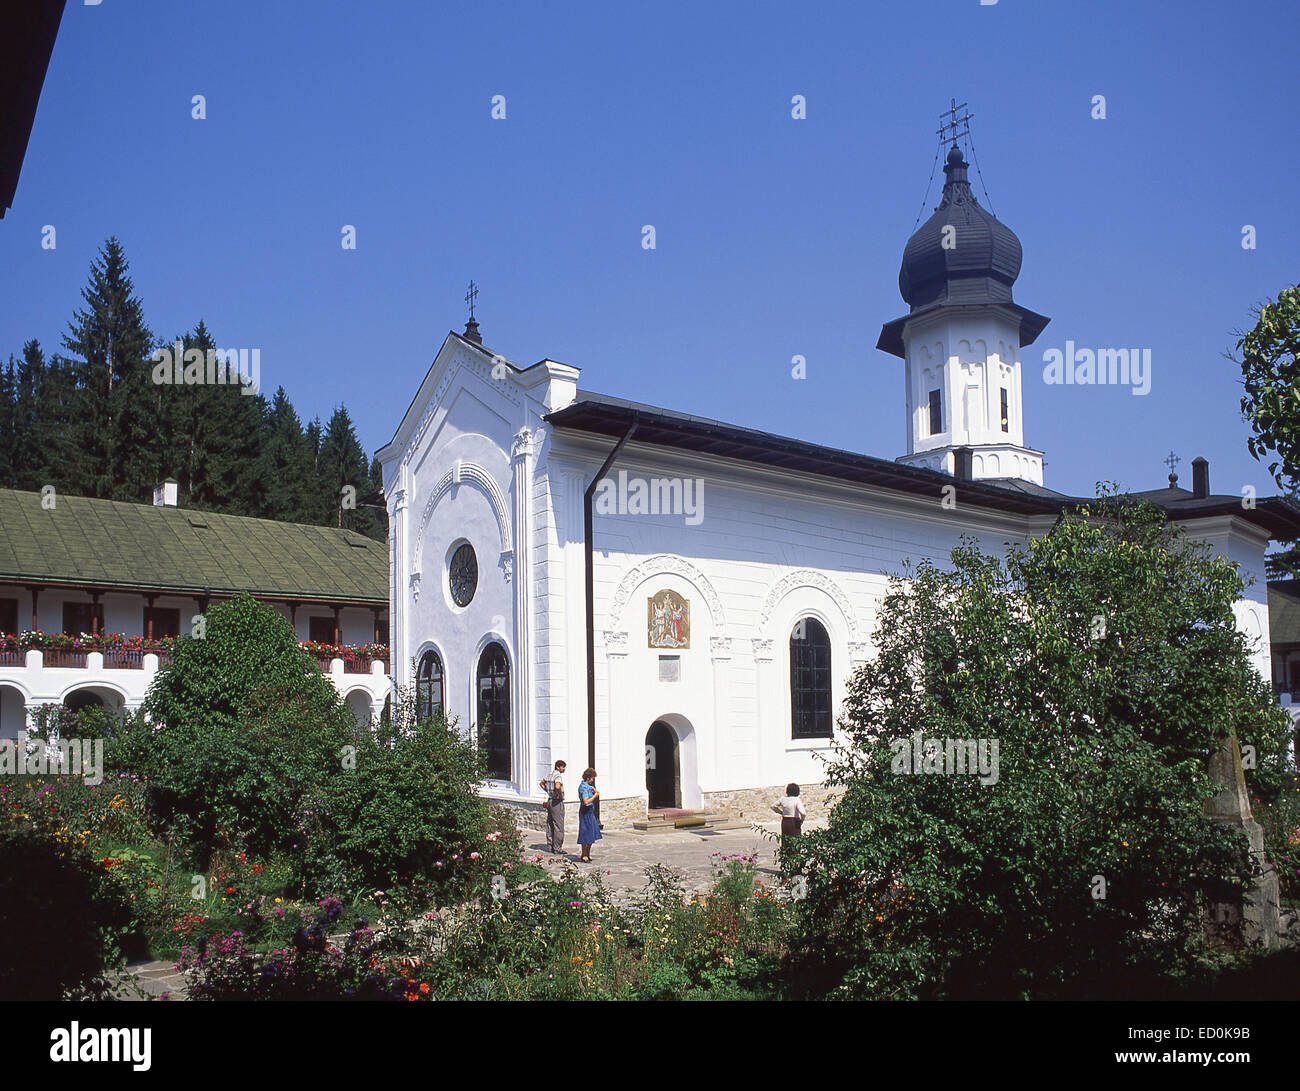 La monastère Agapia (églises peintes de Moldavie), Agapia, Neamt, du Nord-Est Région de la Moldavie, Roumanie Banque D'Images